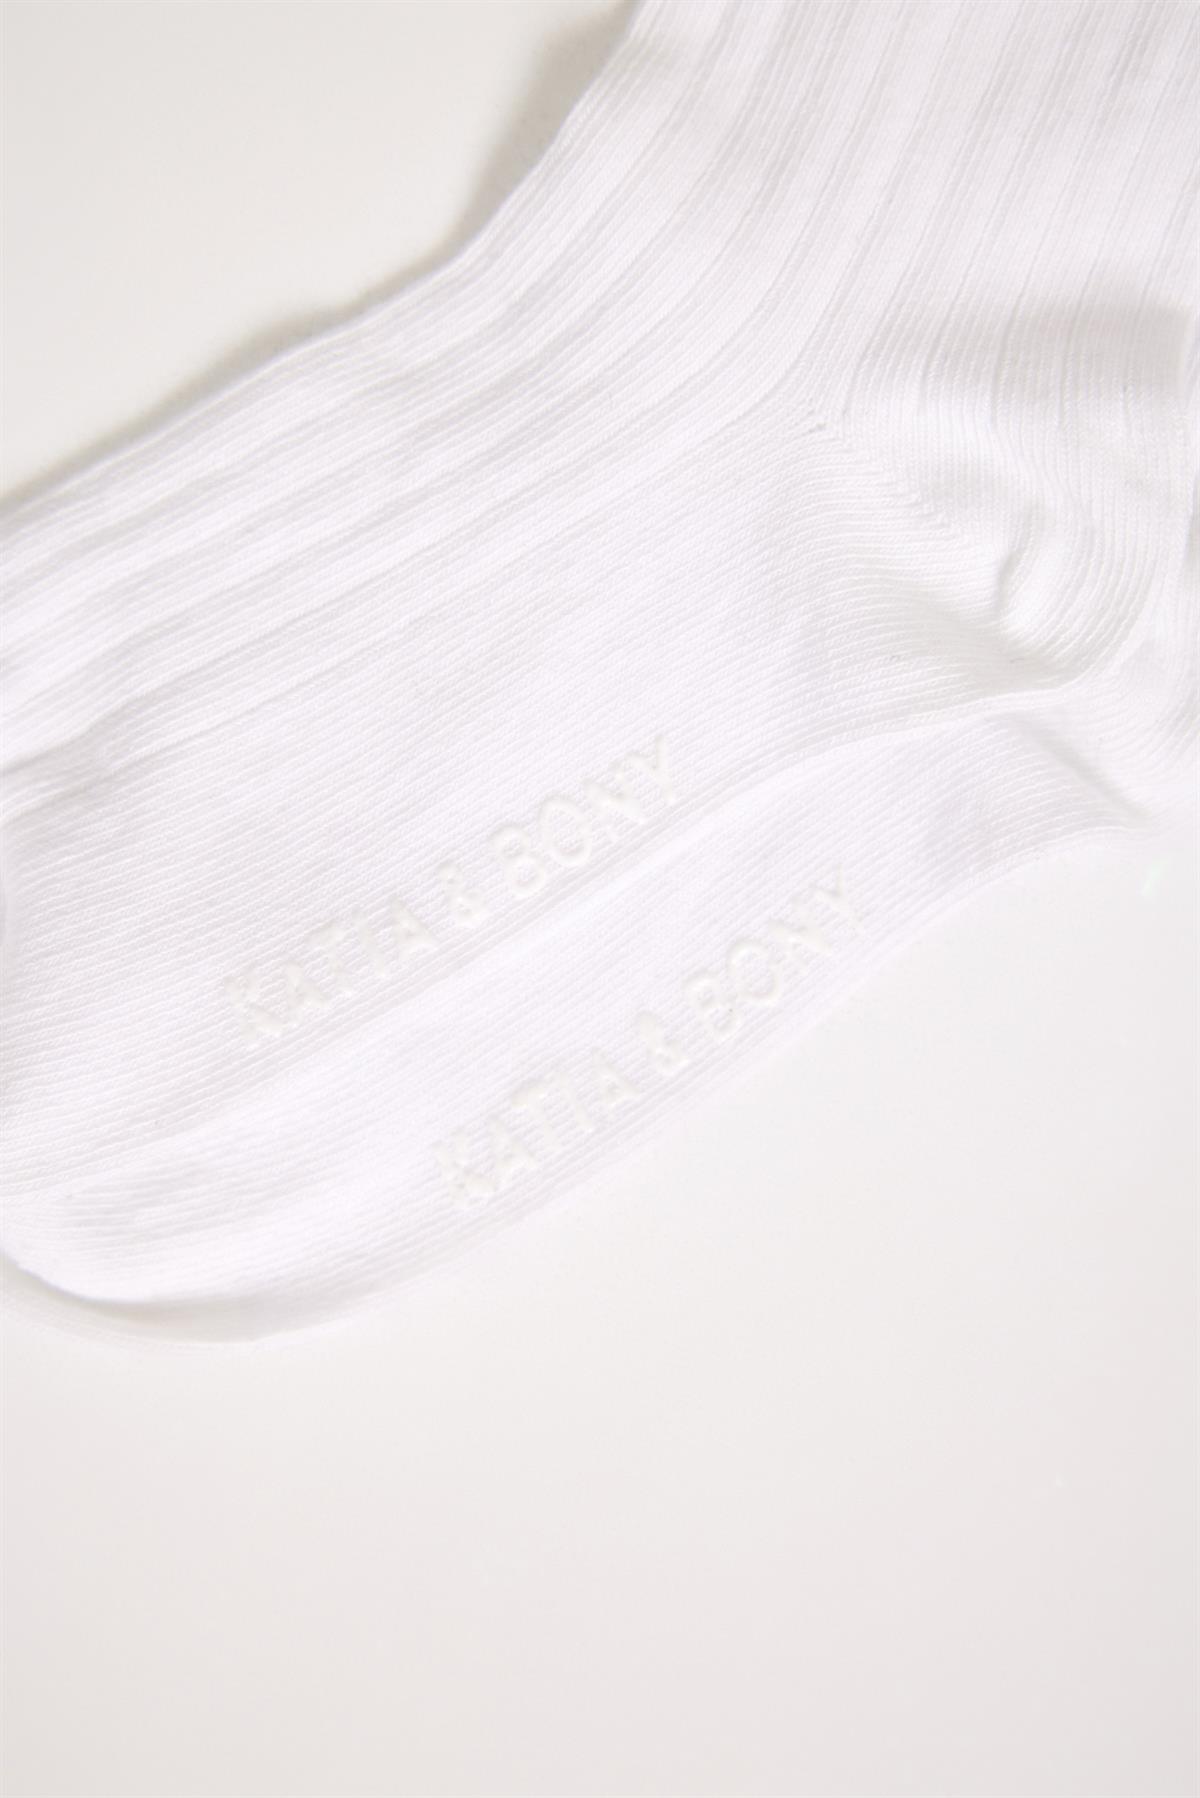 Dantel Fiyonk Detaylı  Dizaltı Çocuk Basic Çorap Beyaz